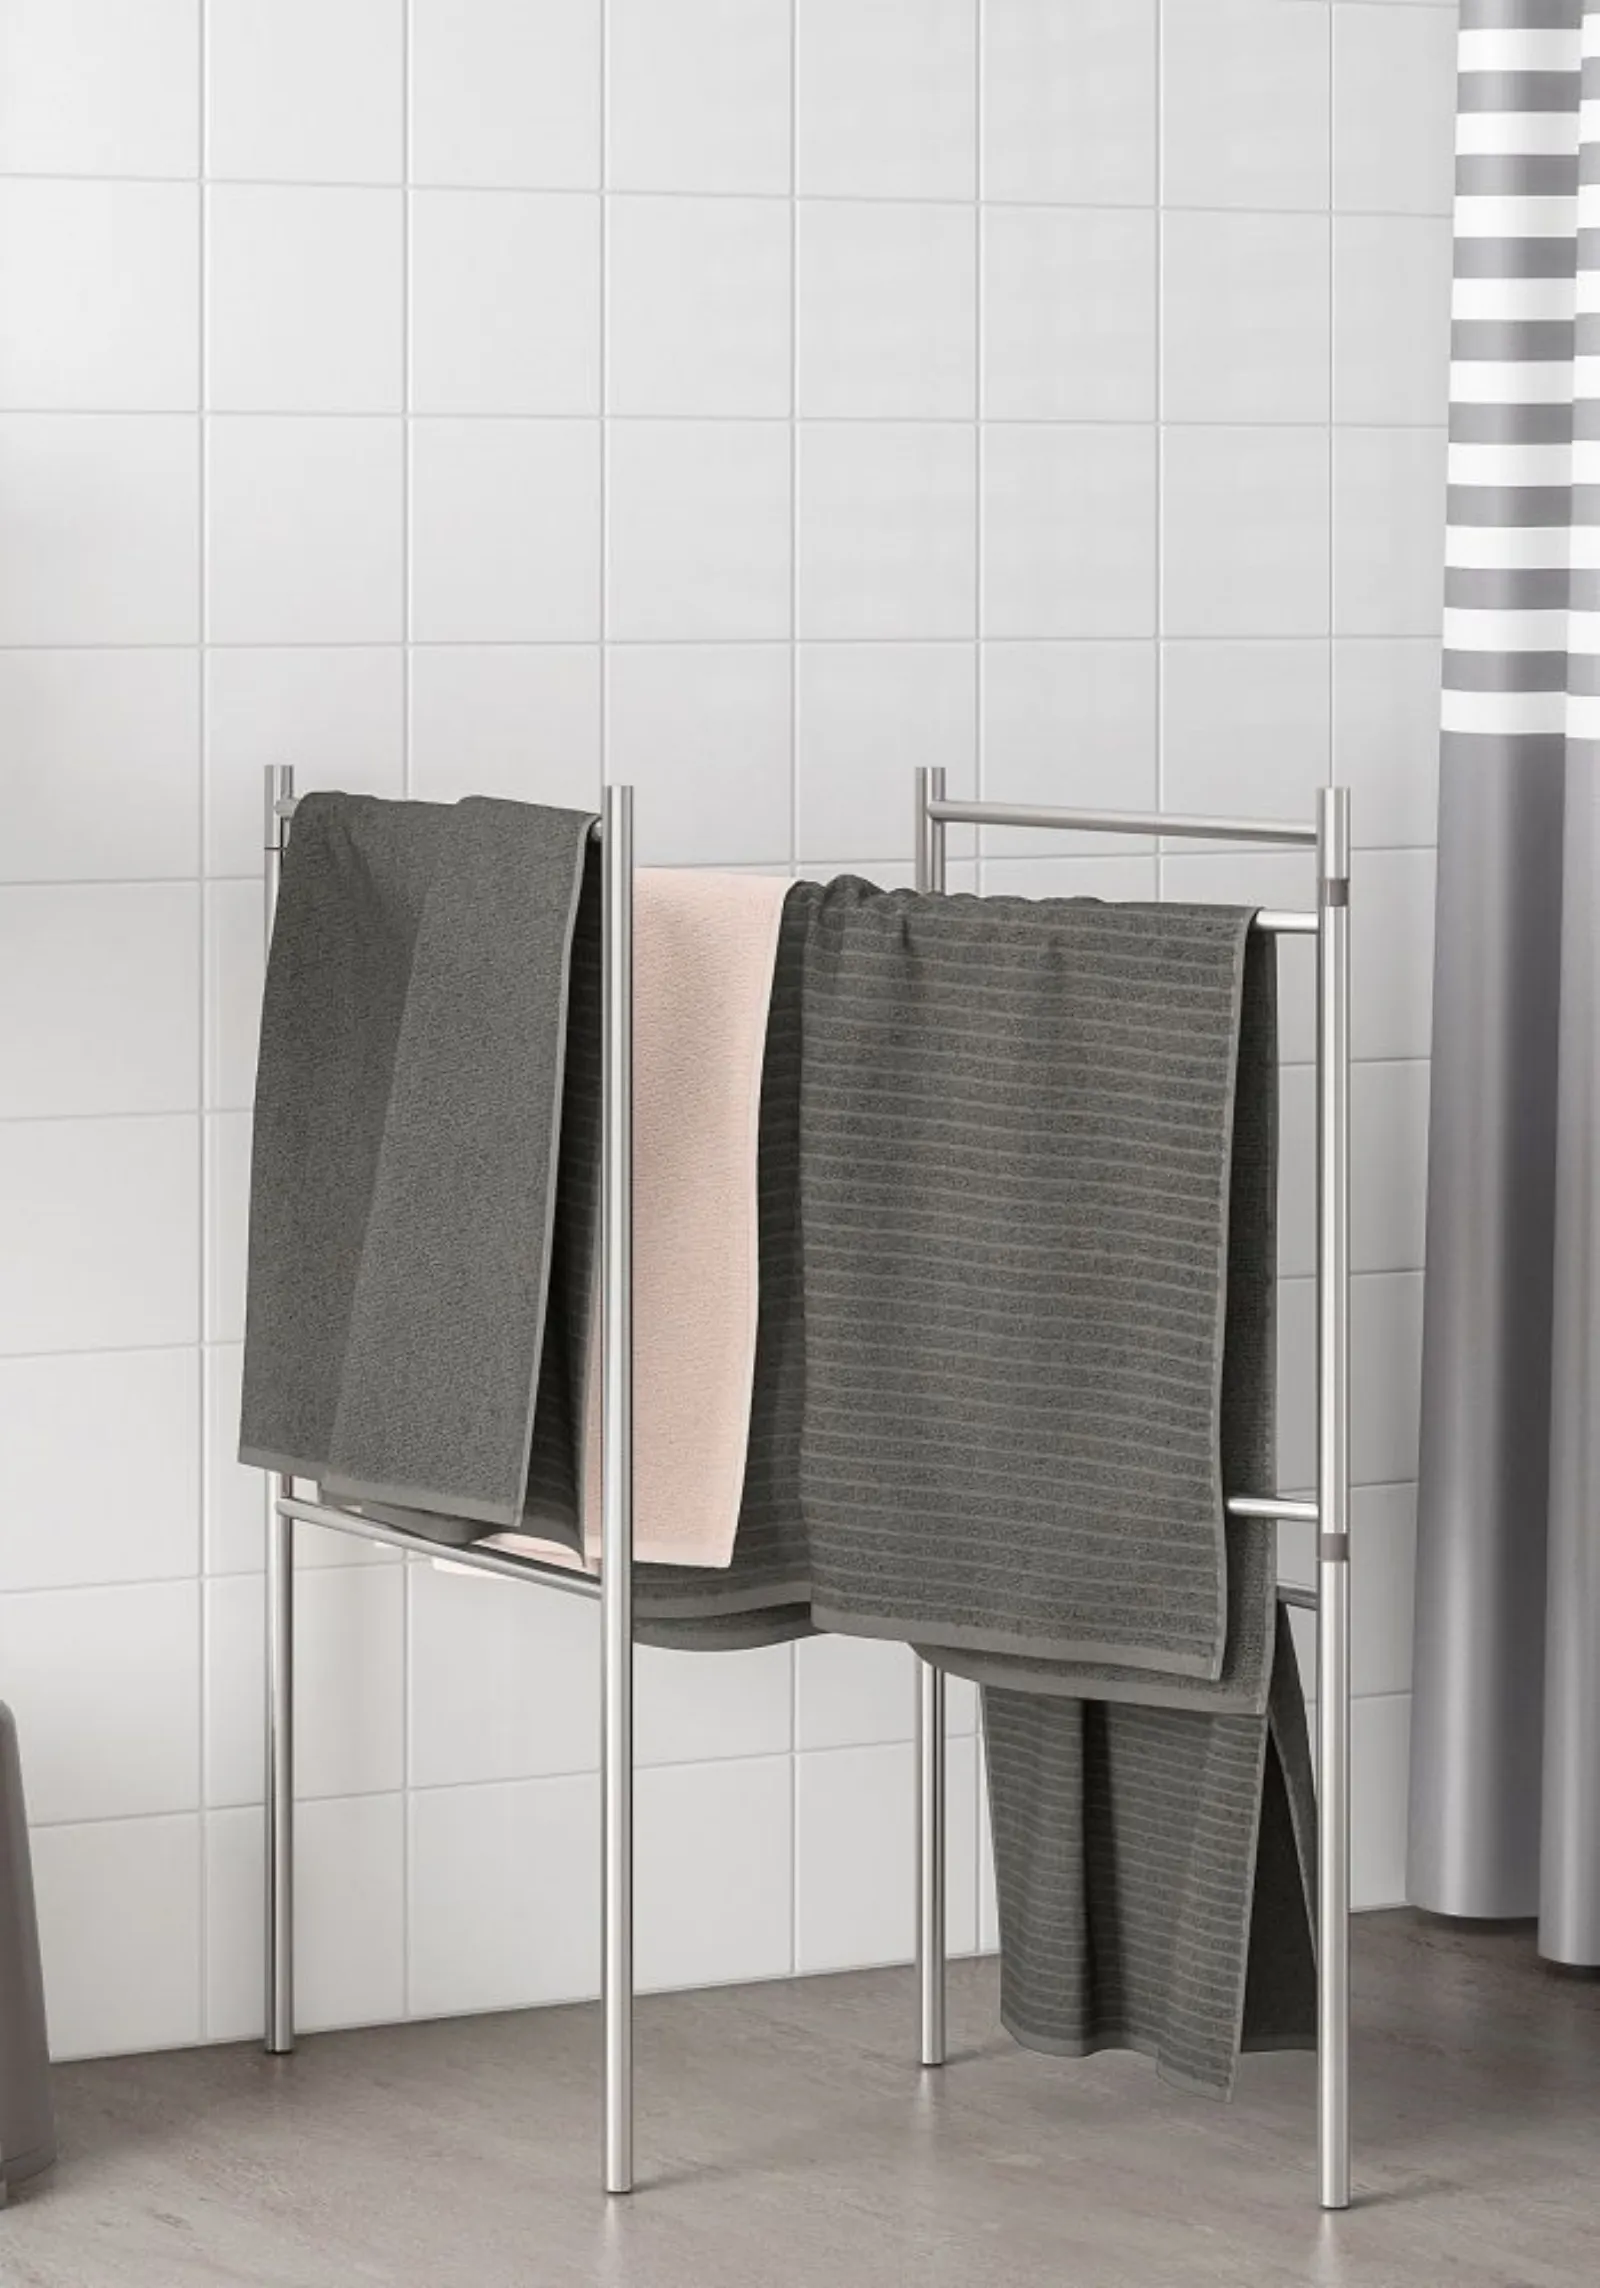 Porta asciugamani bagno 60 cm in acciaio: Offerte bagno